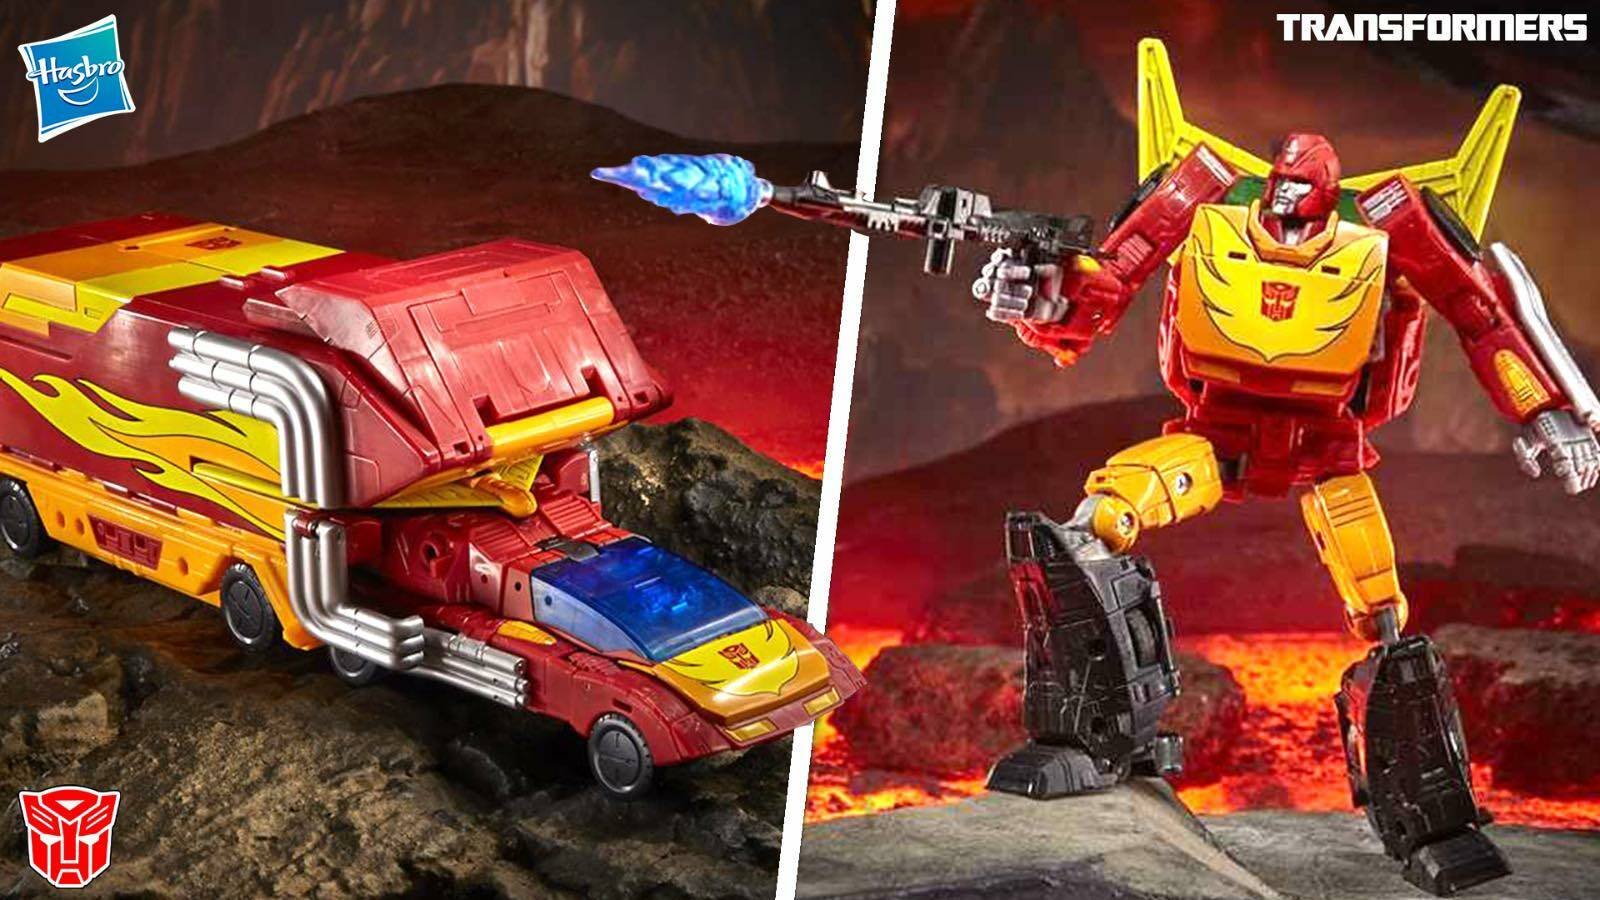 Immagine di Transformers: Rodimus Prime da Hasbro - la recensione